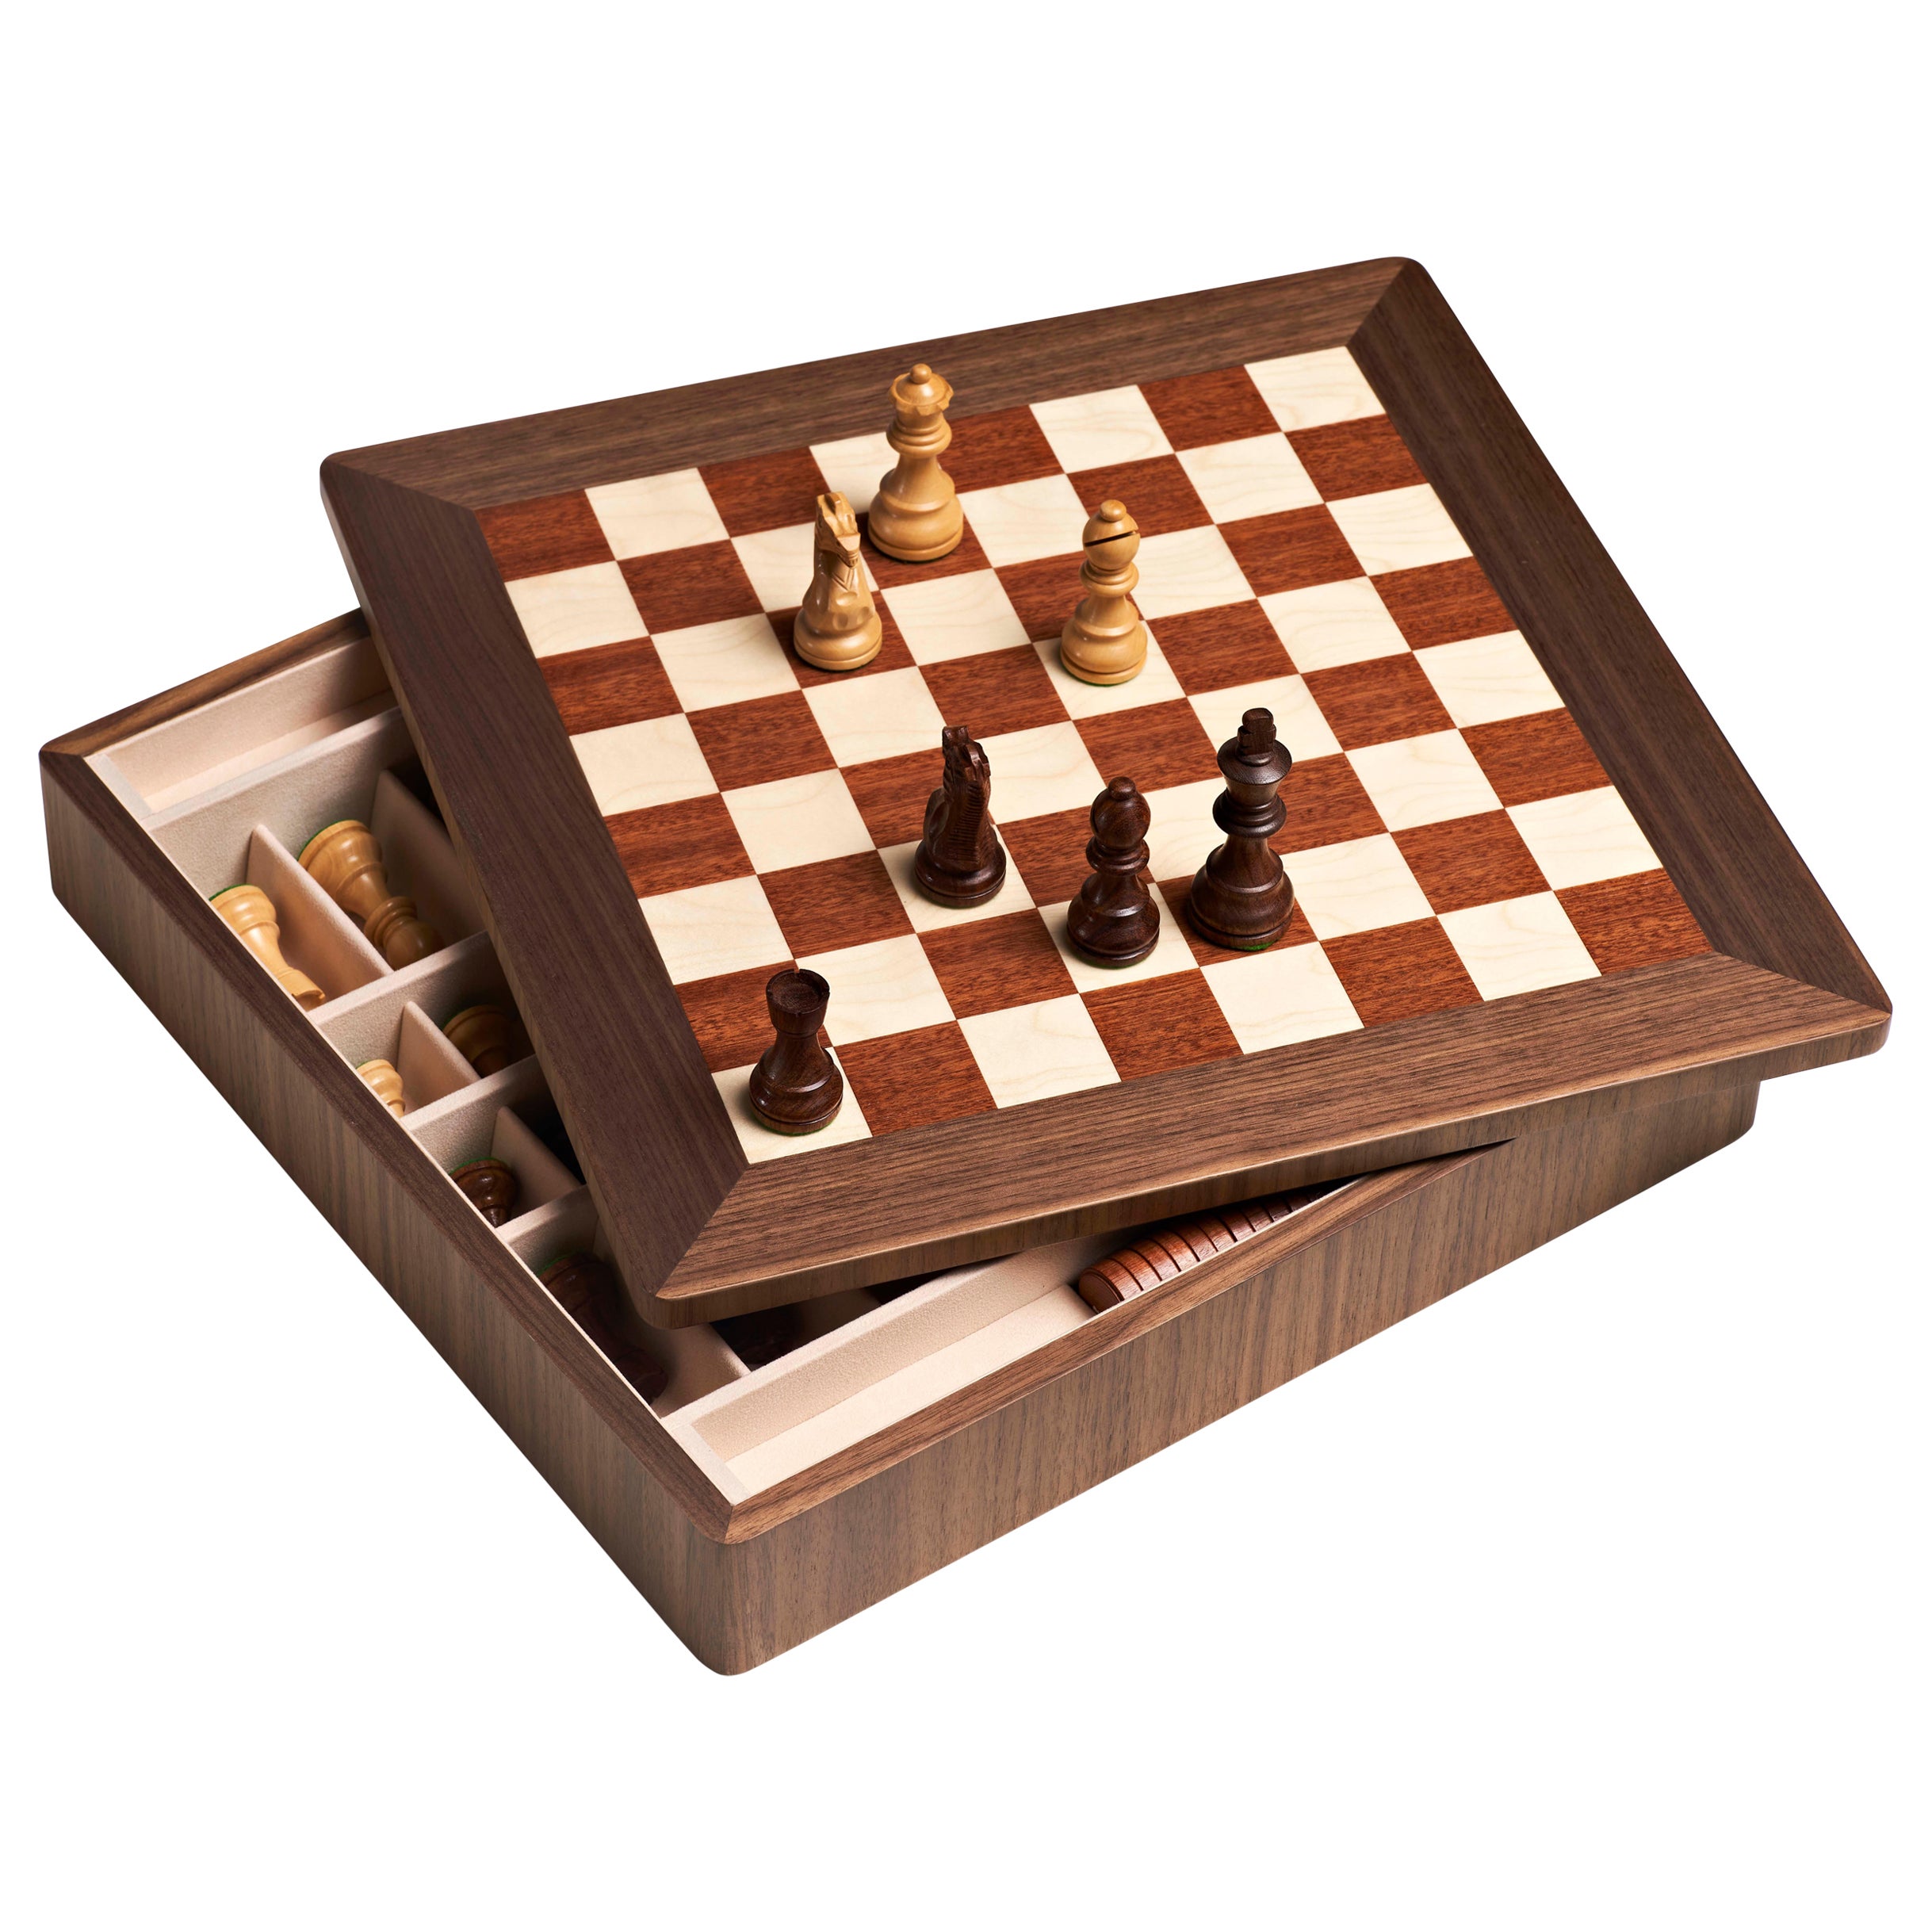 Schachbrett aus mattem Canaletto-Nussbaum und weißem Ahorn. Es enthält Schachfiguren aus Buchsbaum.

 
  